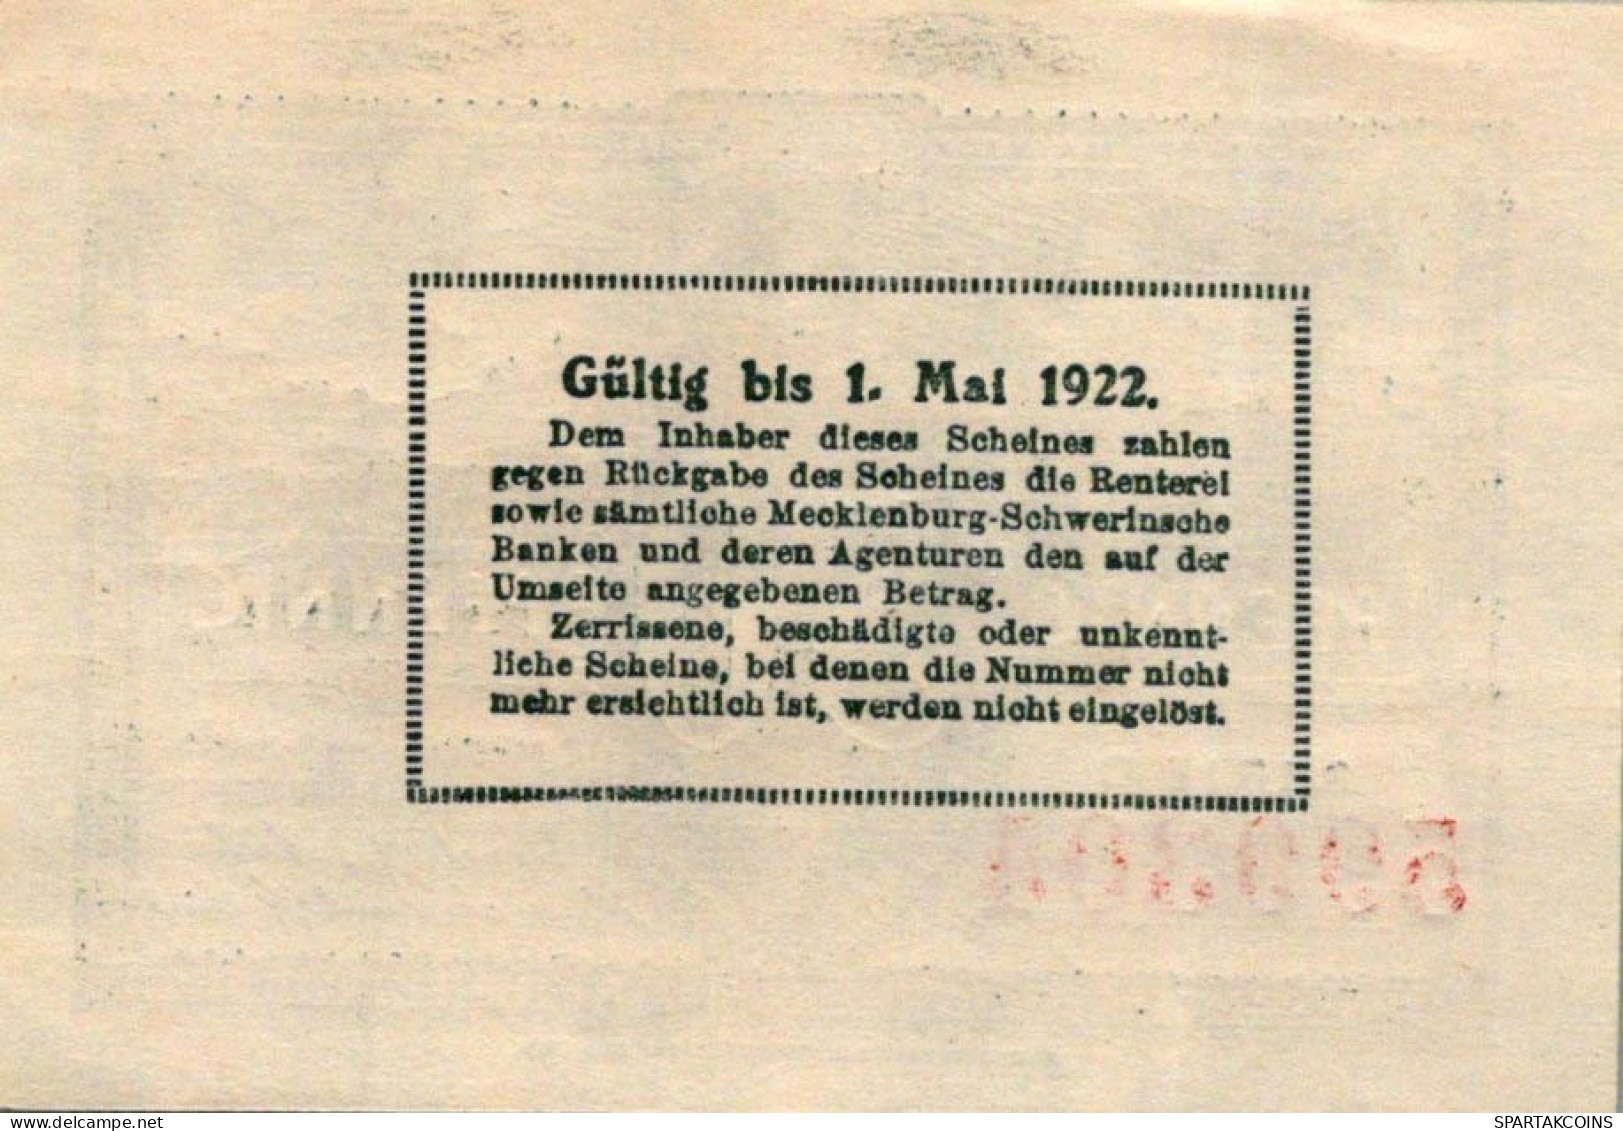 50 PFENNIG 1922 MECKLENBURG-SCHWERIN Mecklenburg-Schwerin UNC DEUTSCHLAND #PI737 - [11] Local Banknote Issues